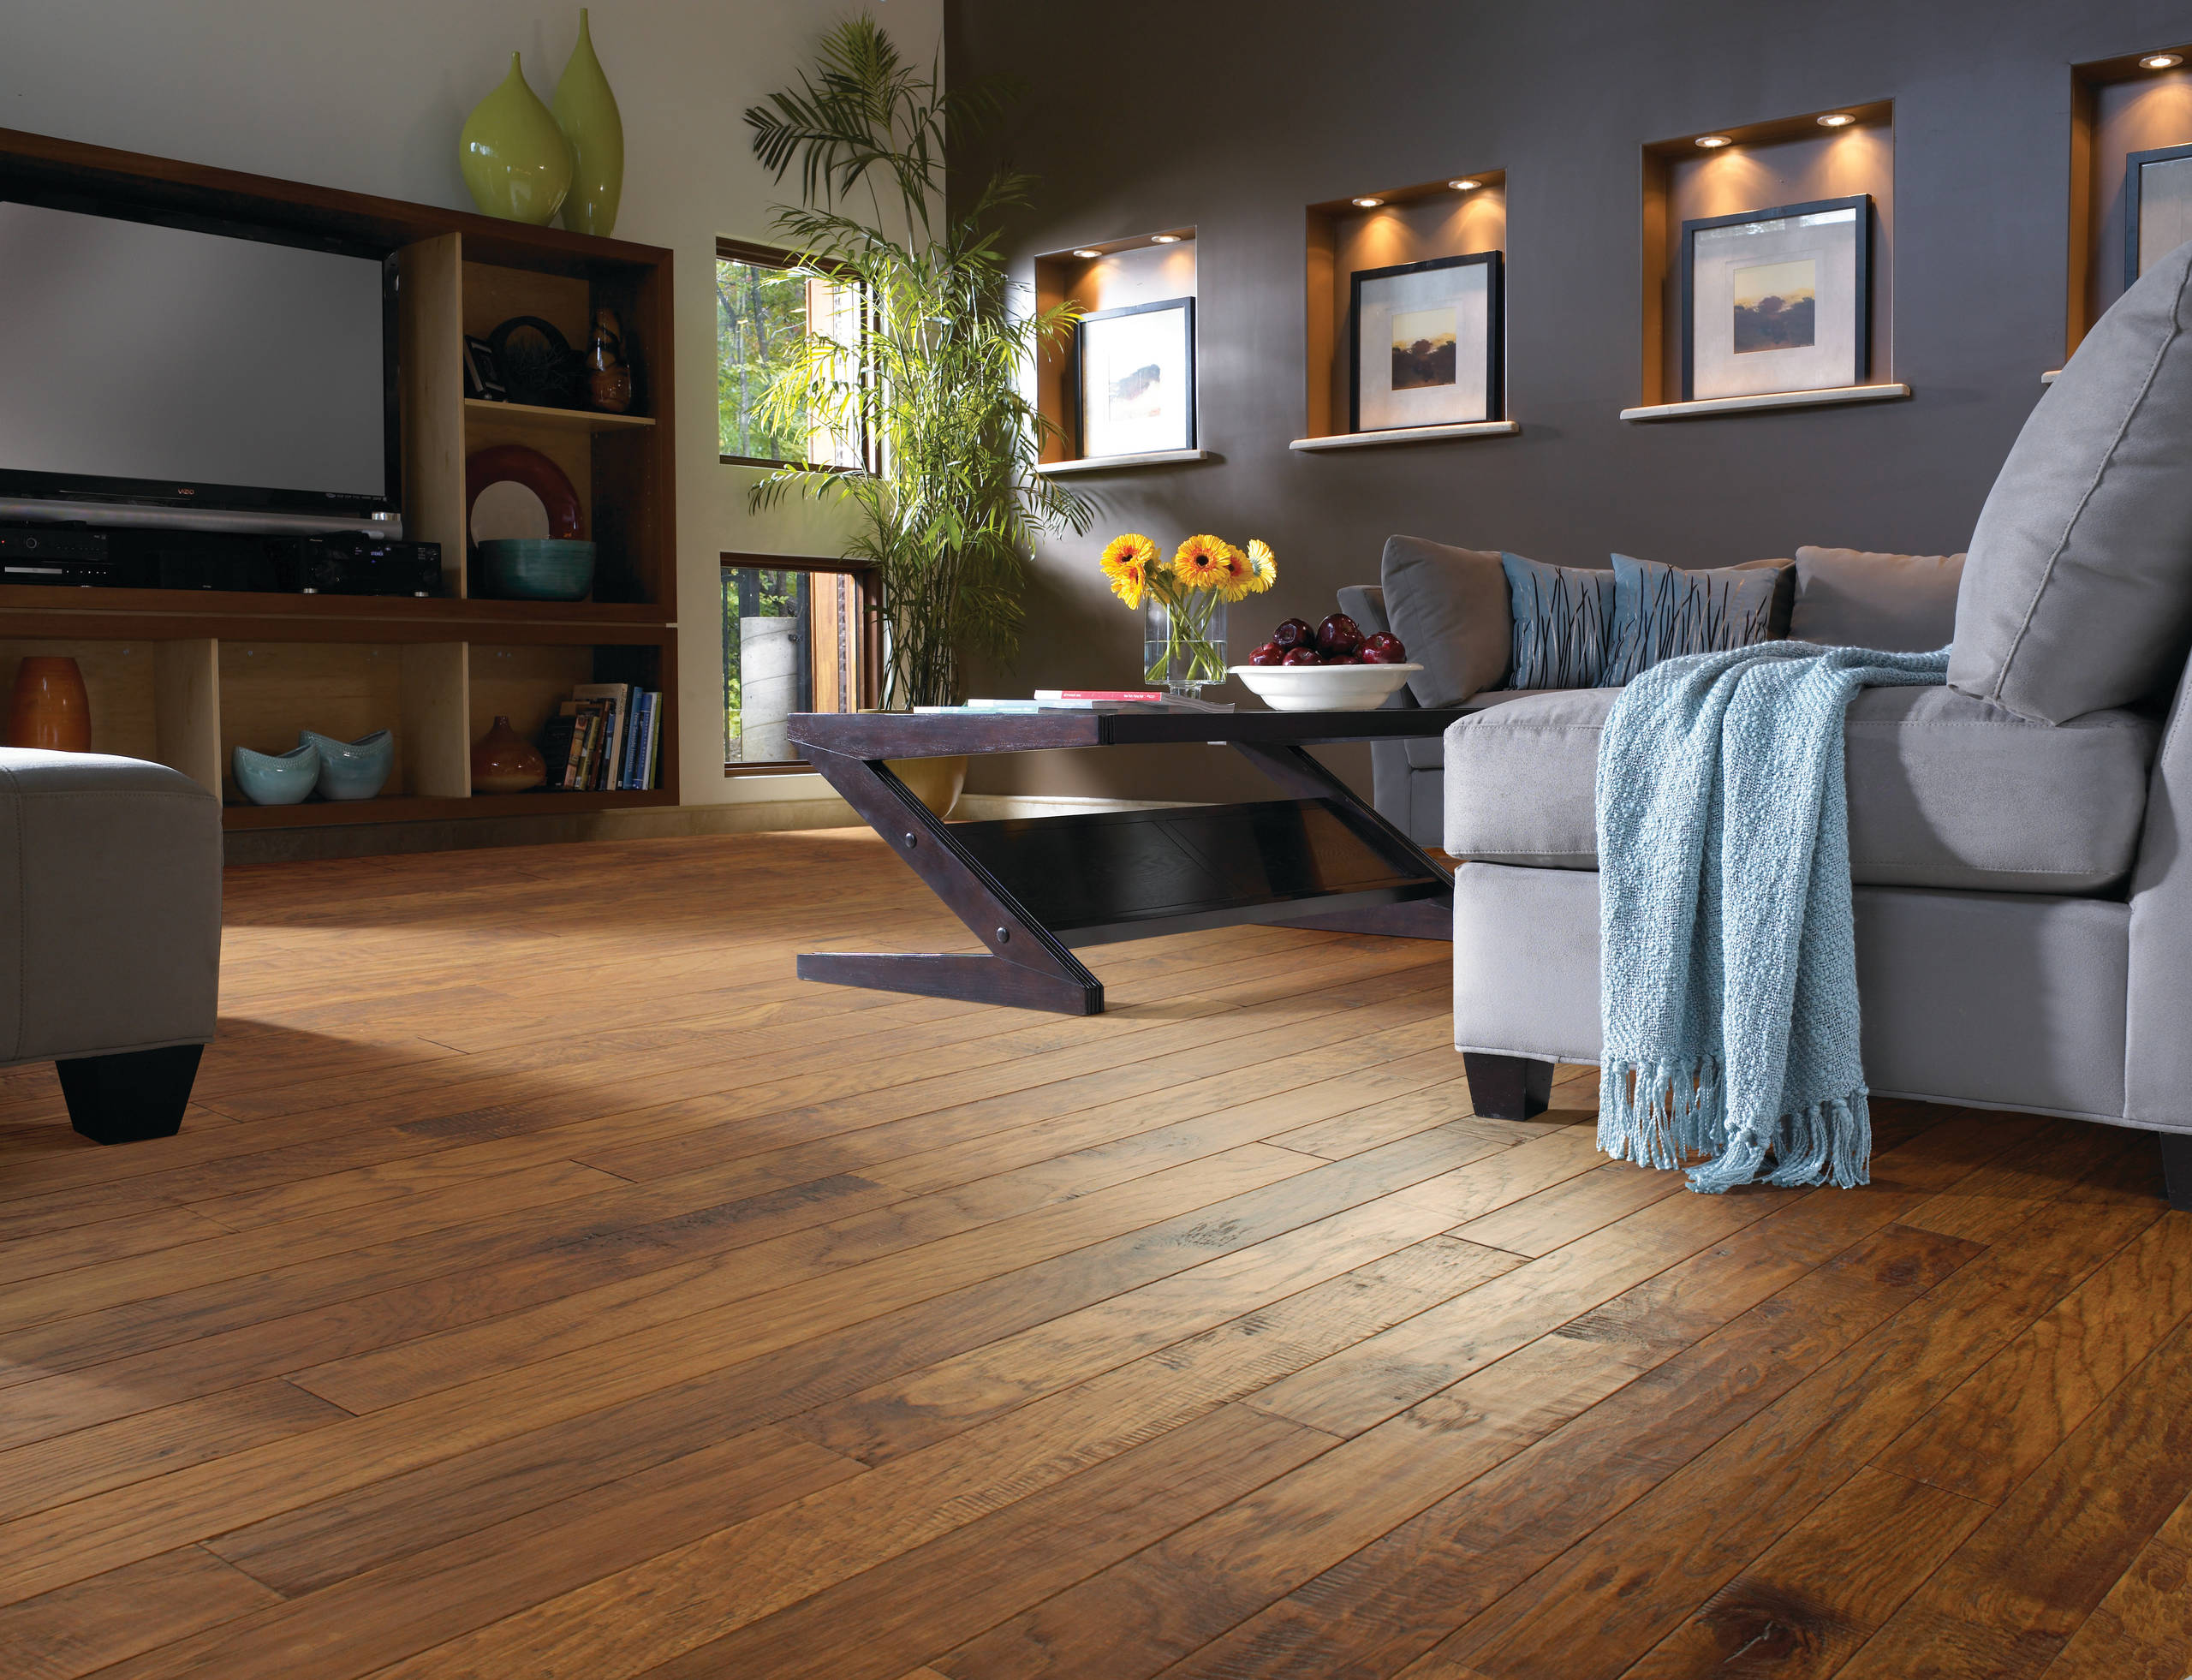 Hickory Wood Floor Living Room, Hardwood Floor Living Room Ideas